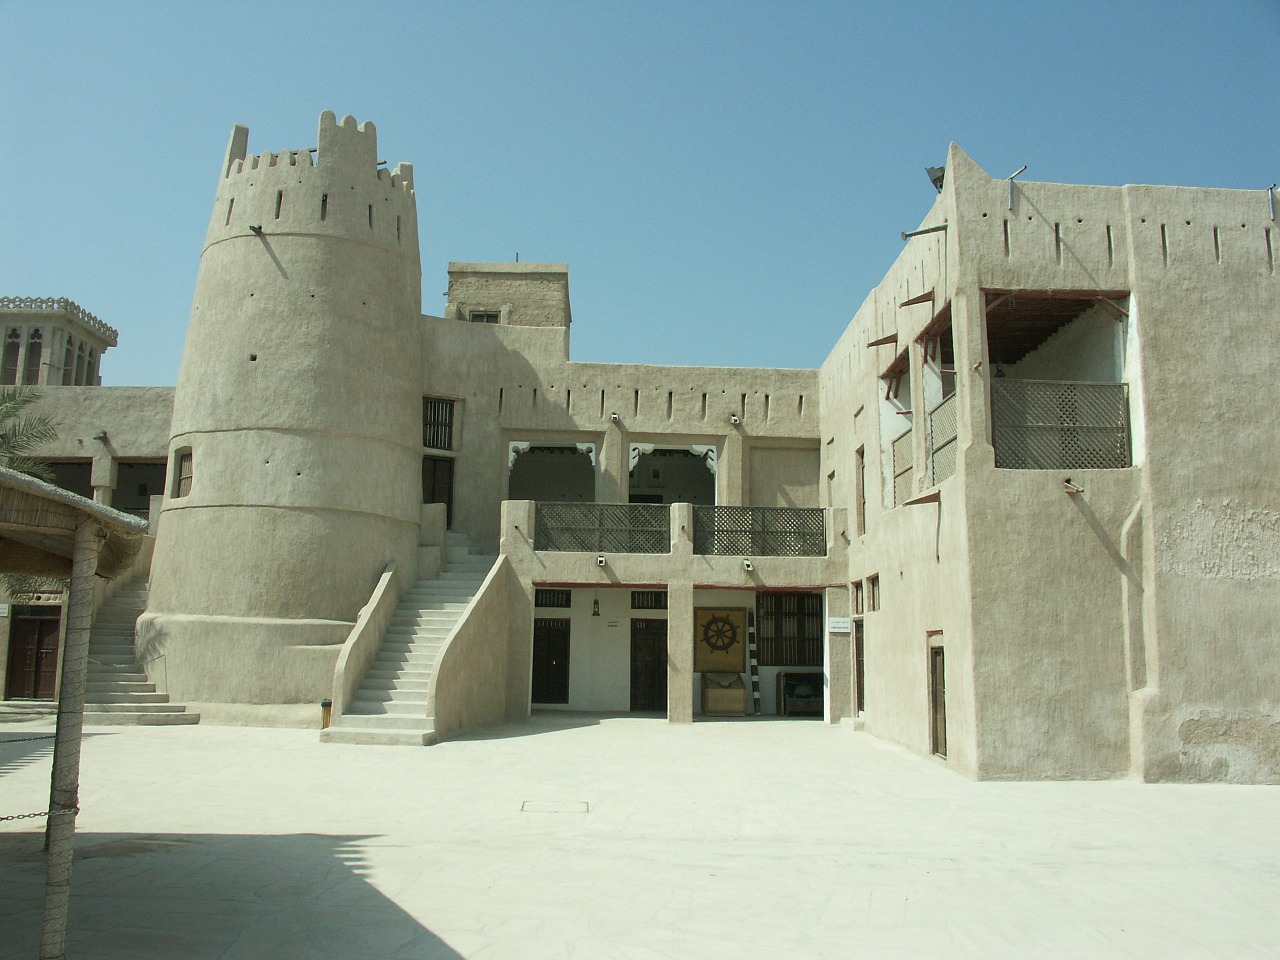 Al Hisn Fort Museum